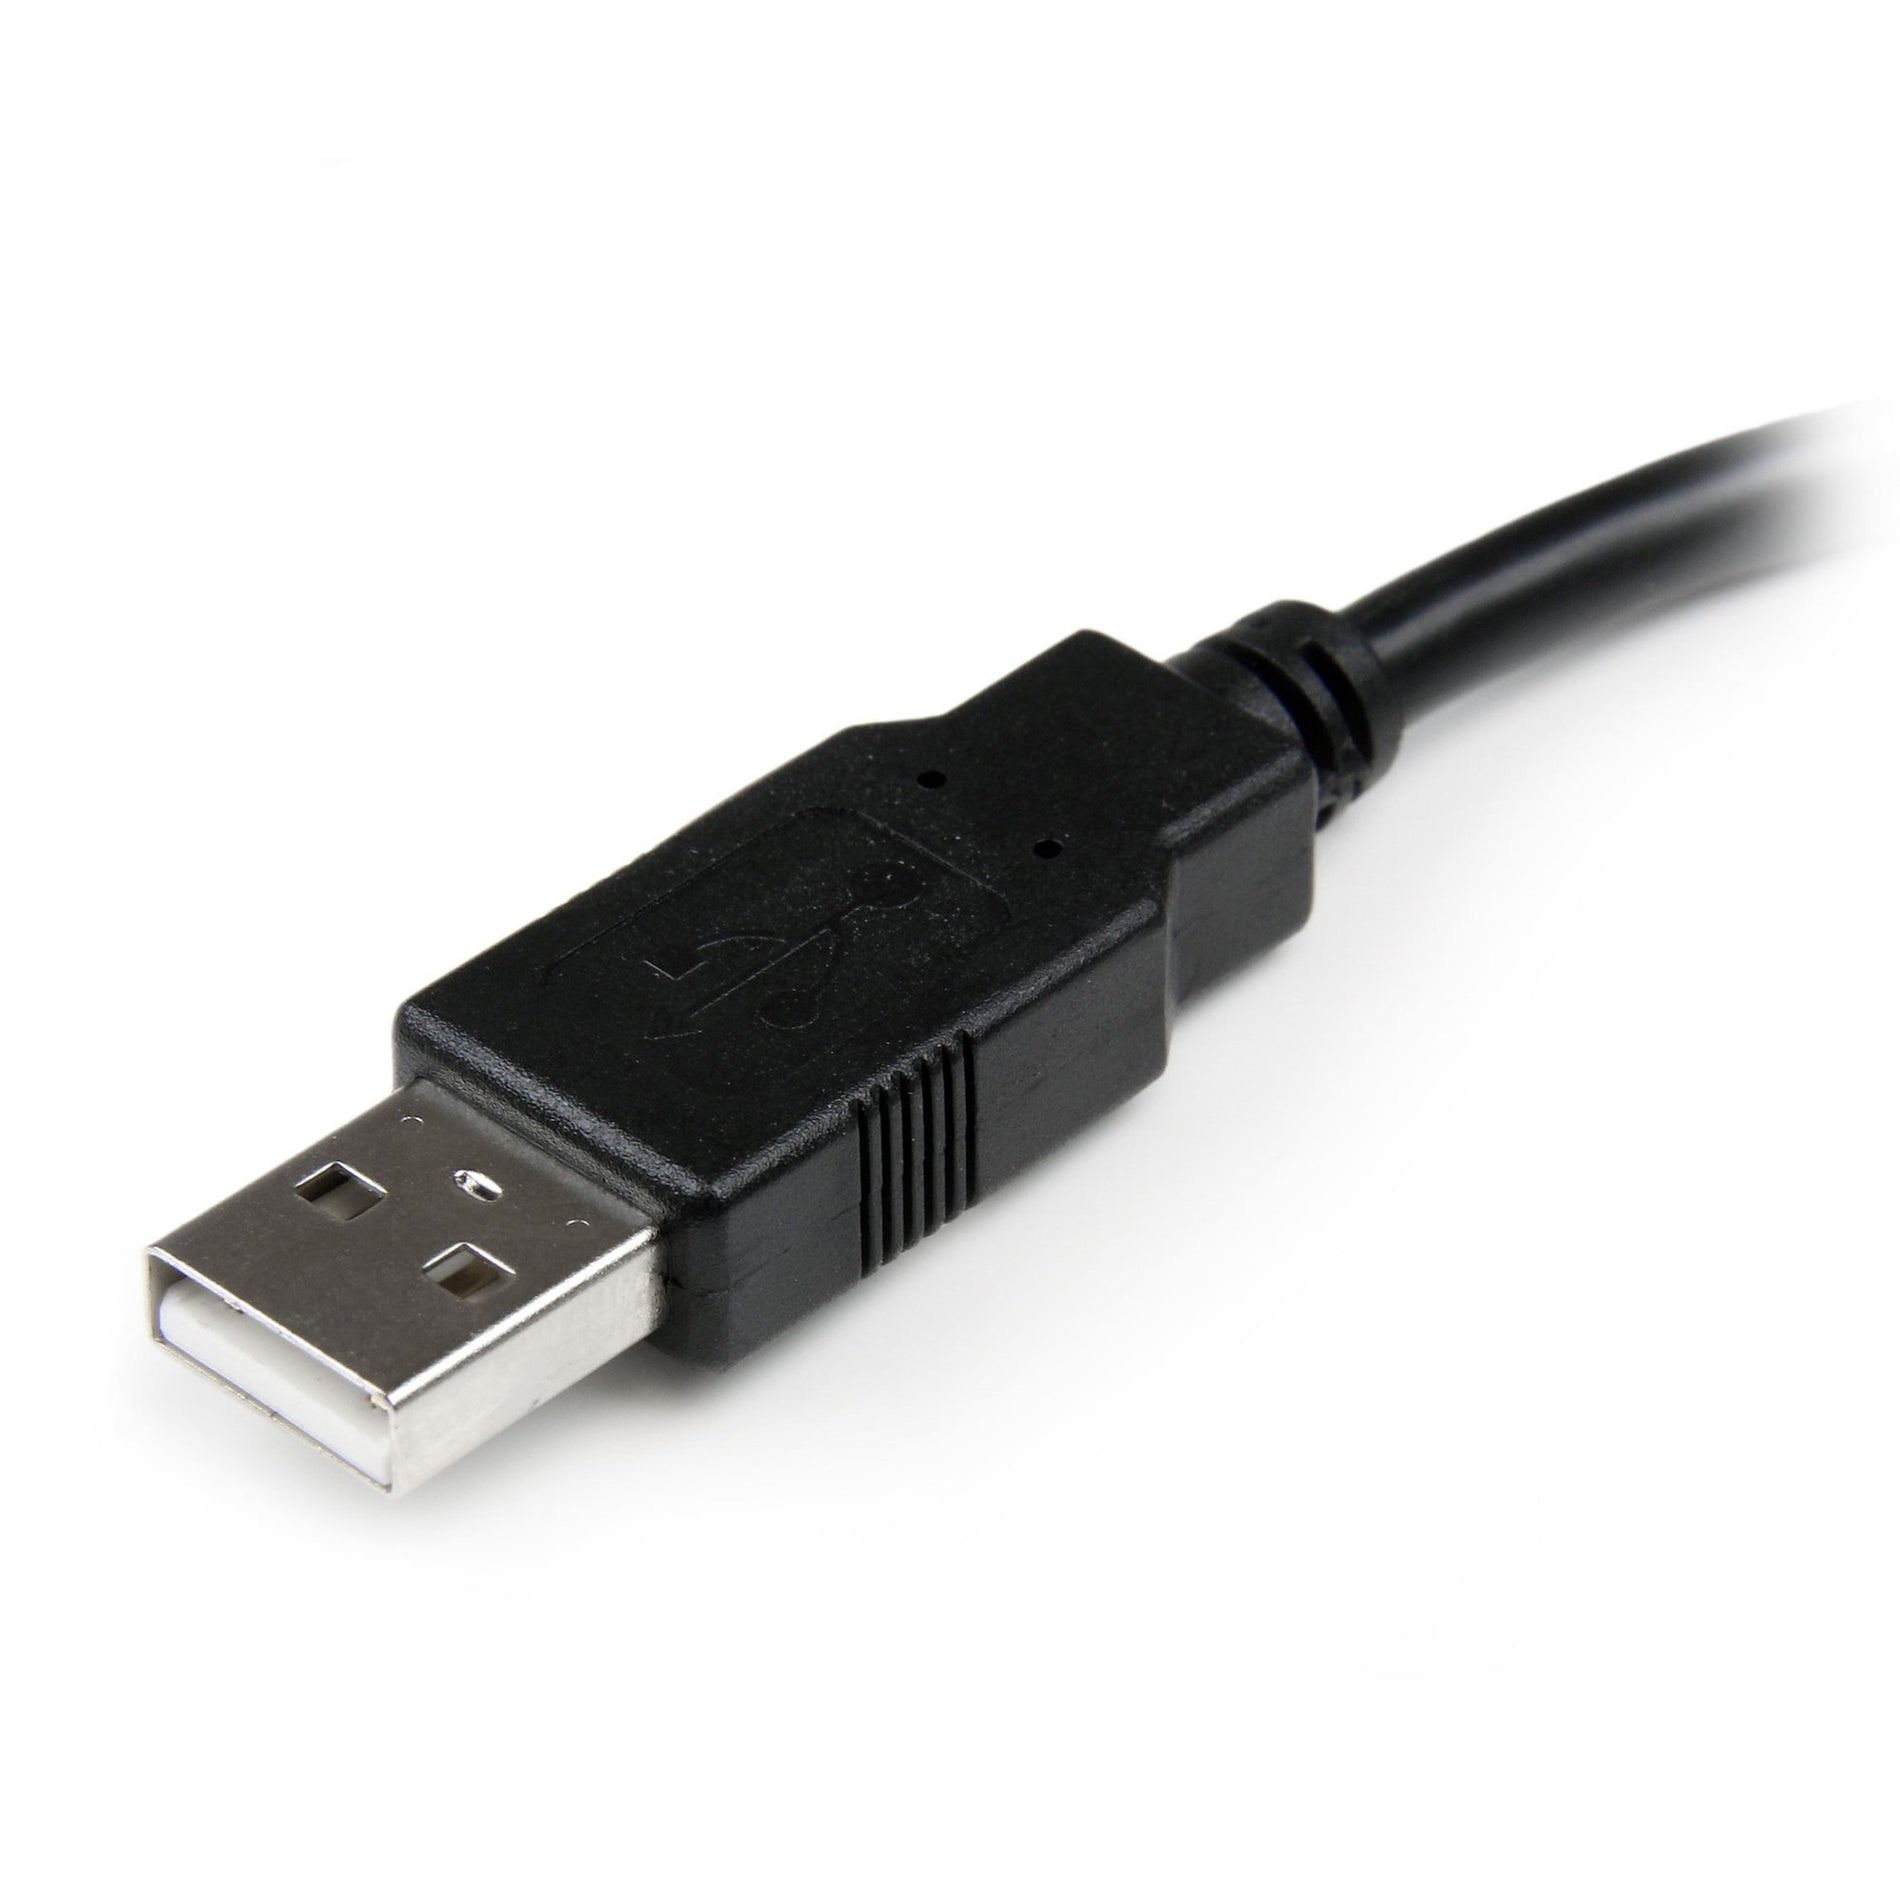 星美科技.com USBEXTAA6IN 6in USB 2.0 延长适配器线 A 到 A - M/F 数据传输线 星美科技 数据传输线